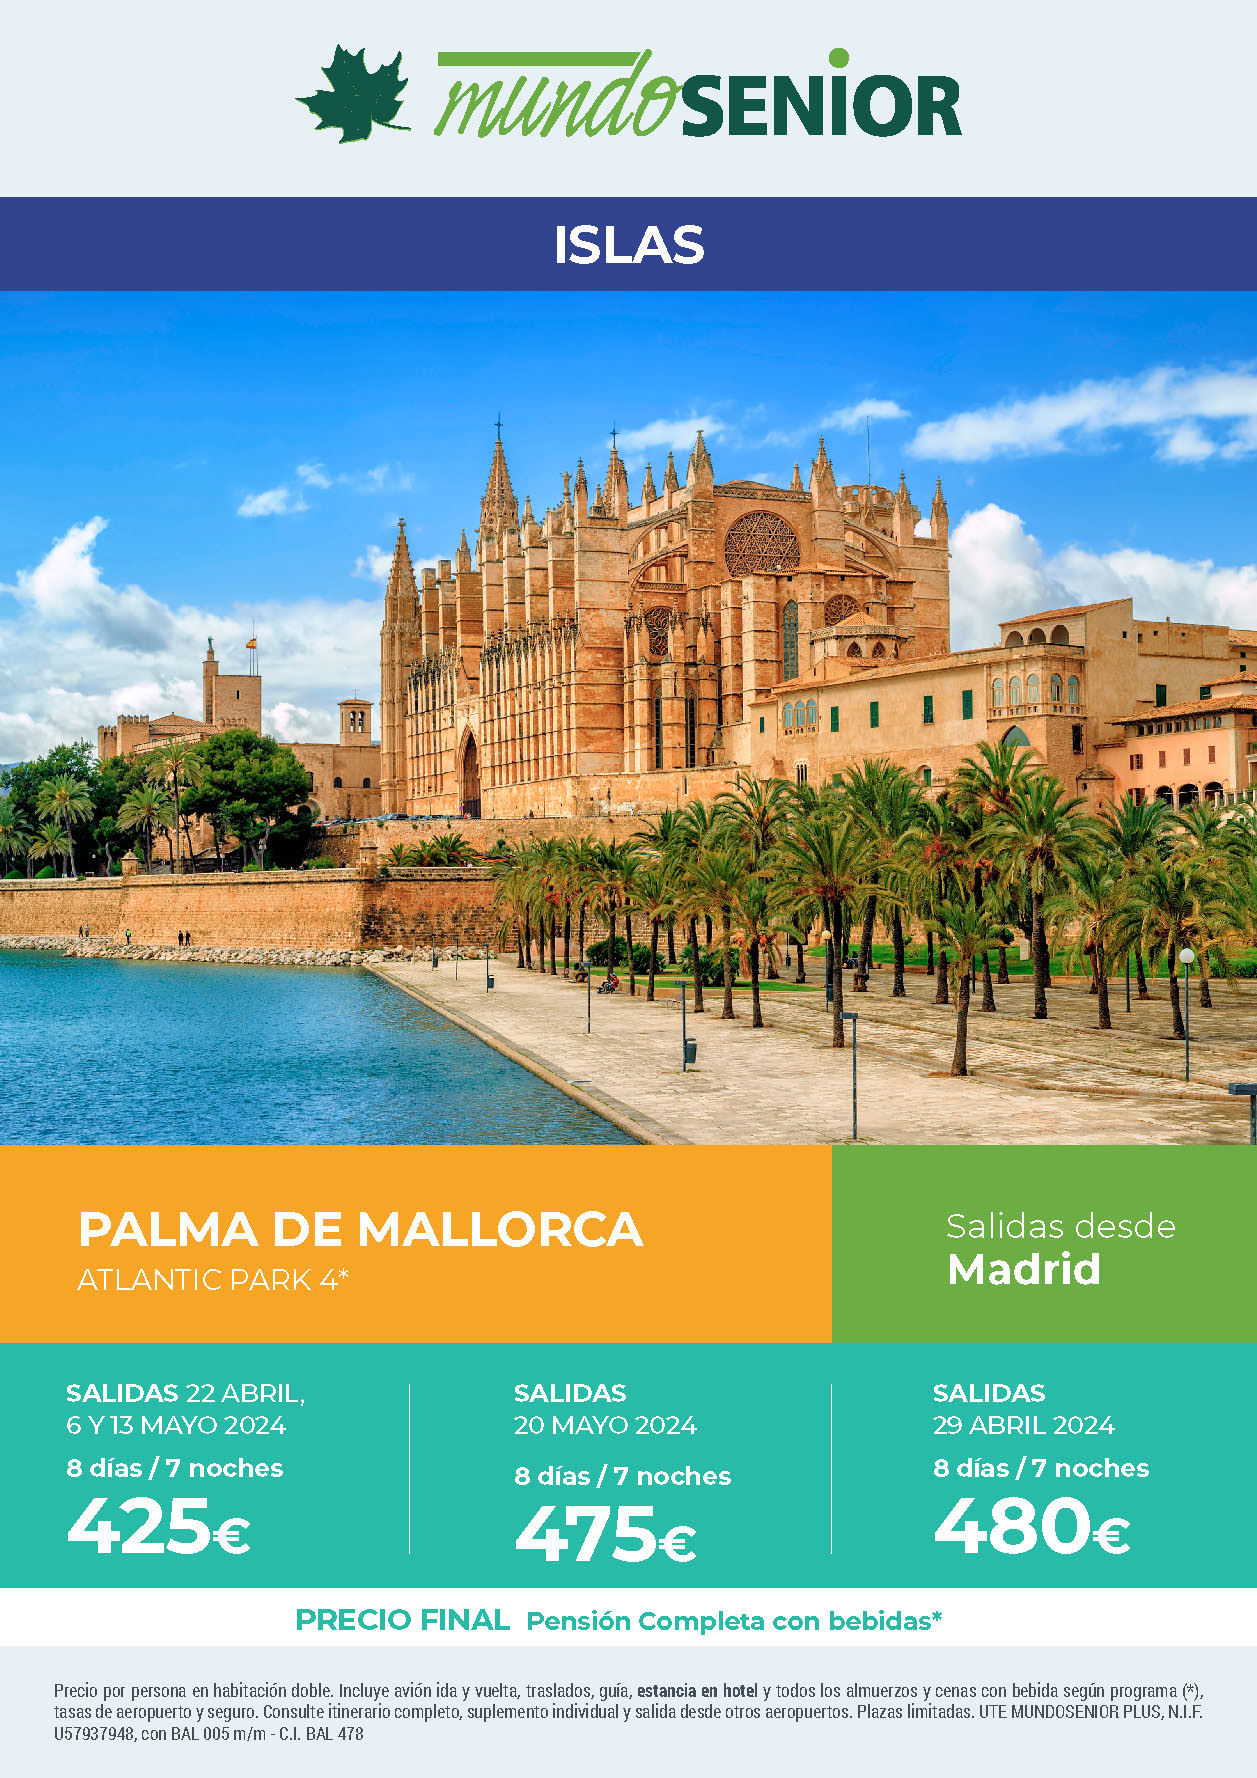 Oferta Mundo Senior Estancia en Mallorca 8 dias hotel 4 estrellas pension completa salidas abril y mayo 2024 desde Madrid